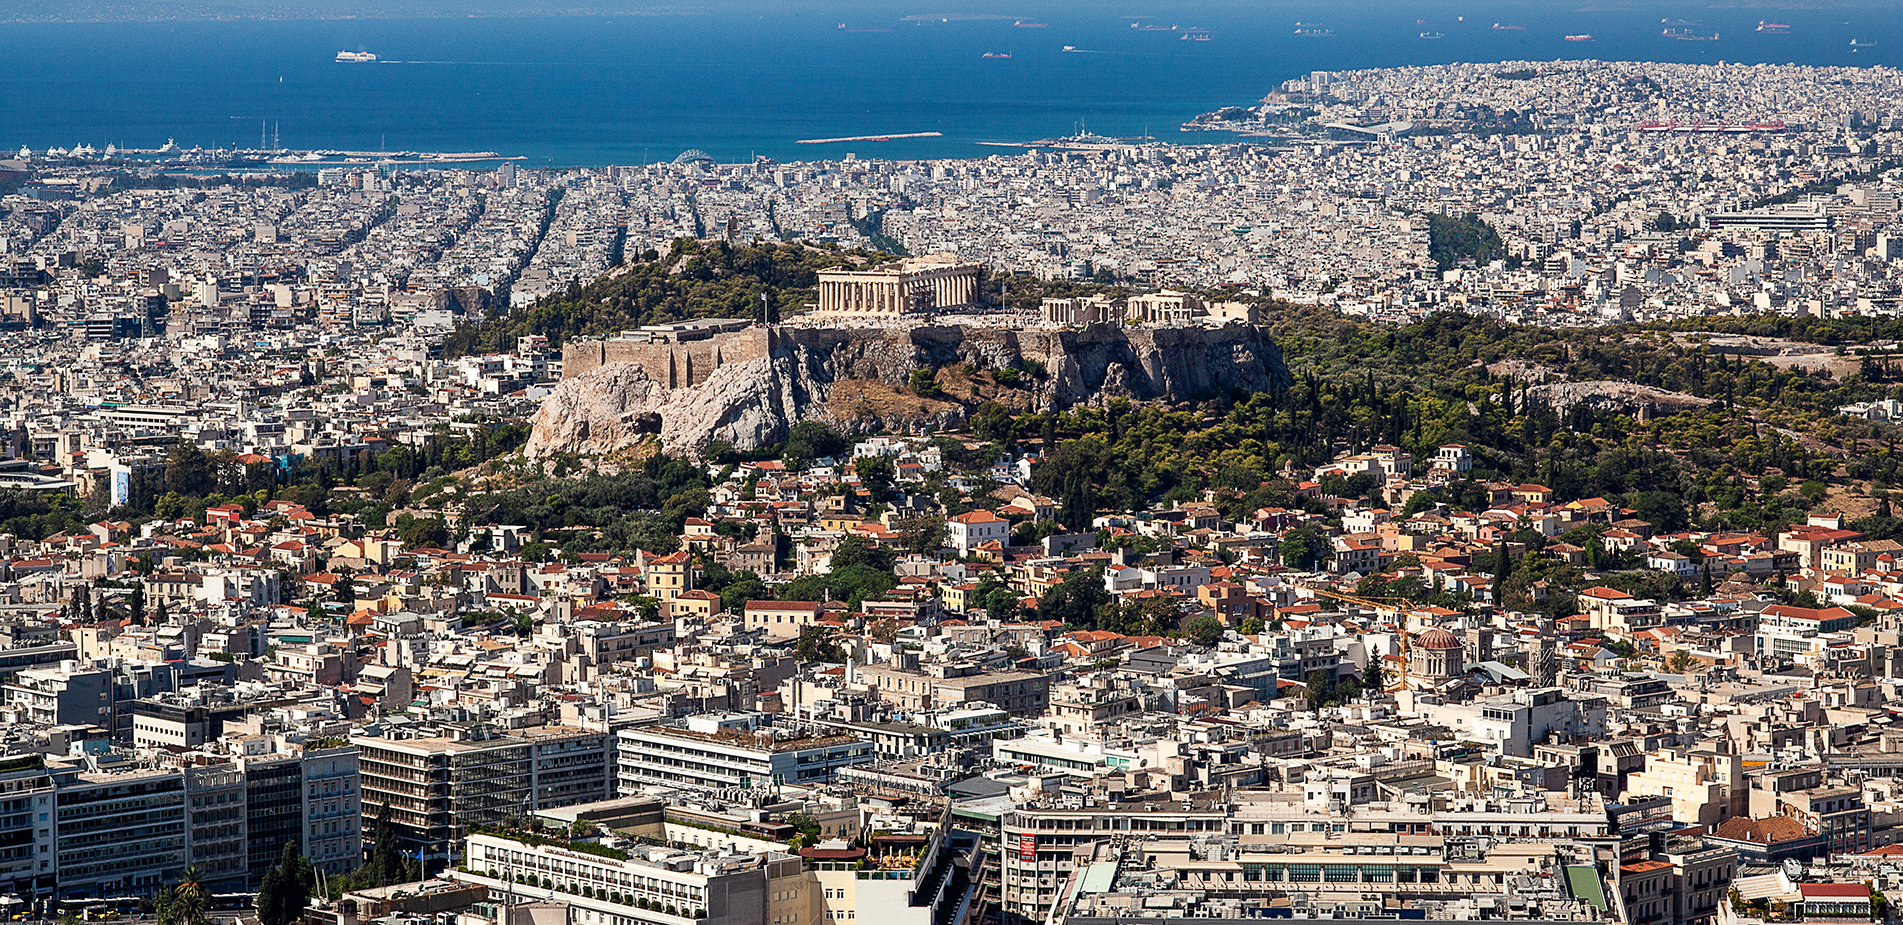 Αθήνα: Η μόνη ευρωπαϊκή πρωτεύουσα που δε διαρρέεται από κανένα ποτάμι